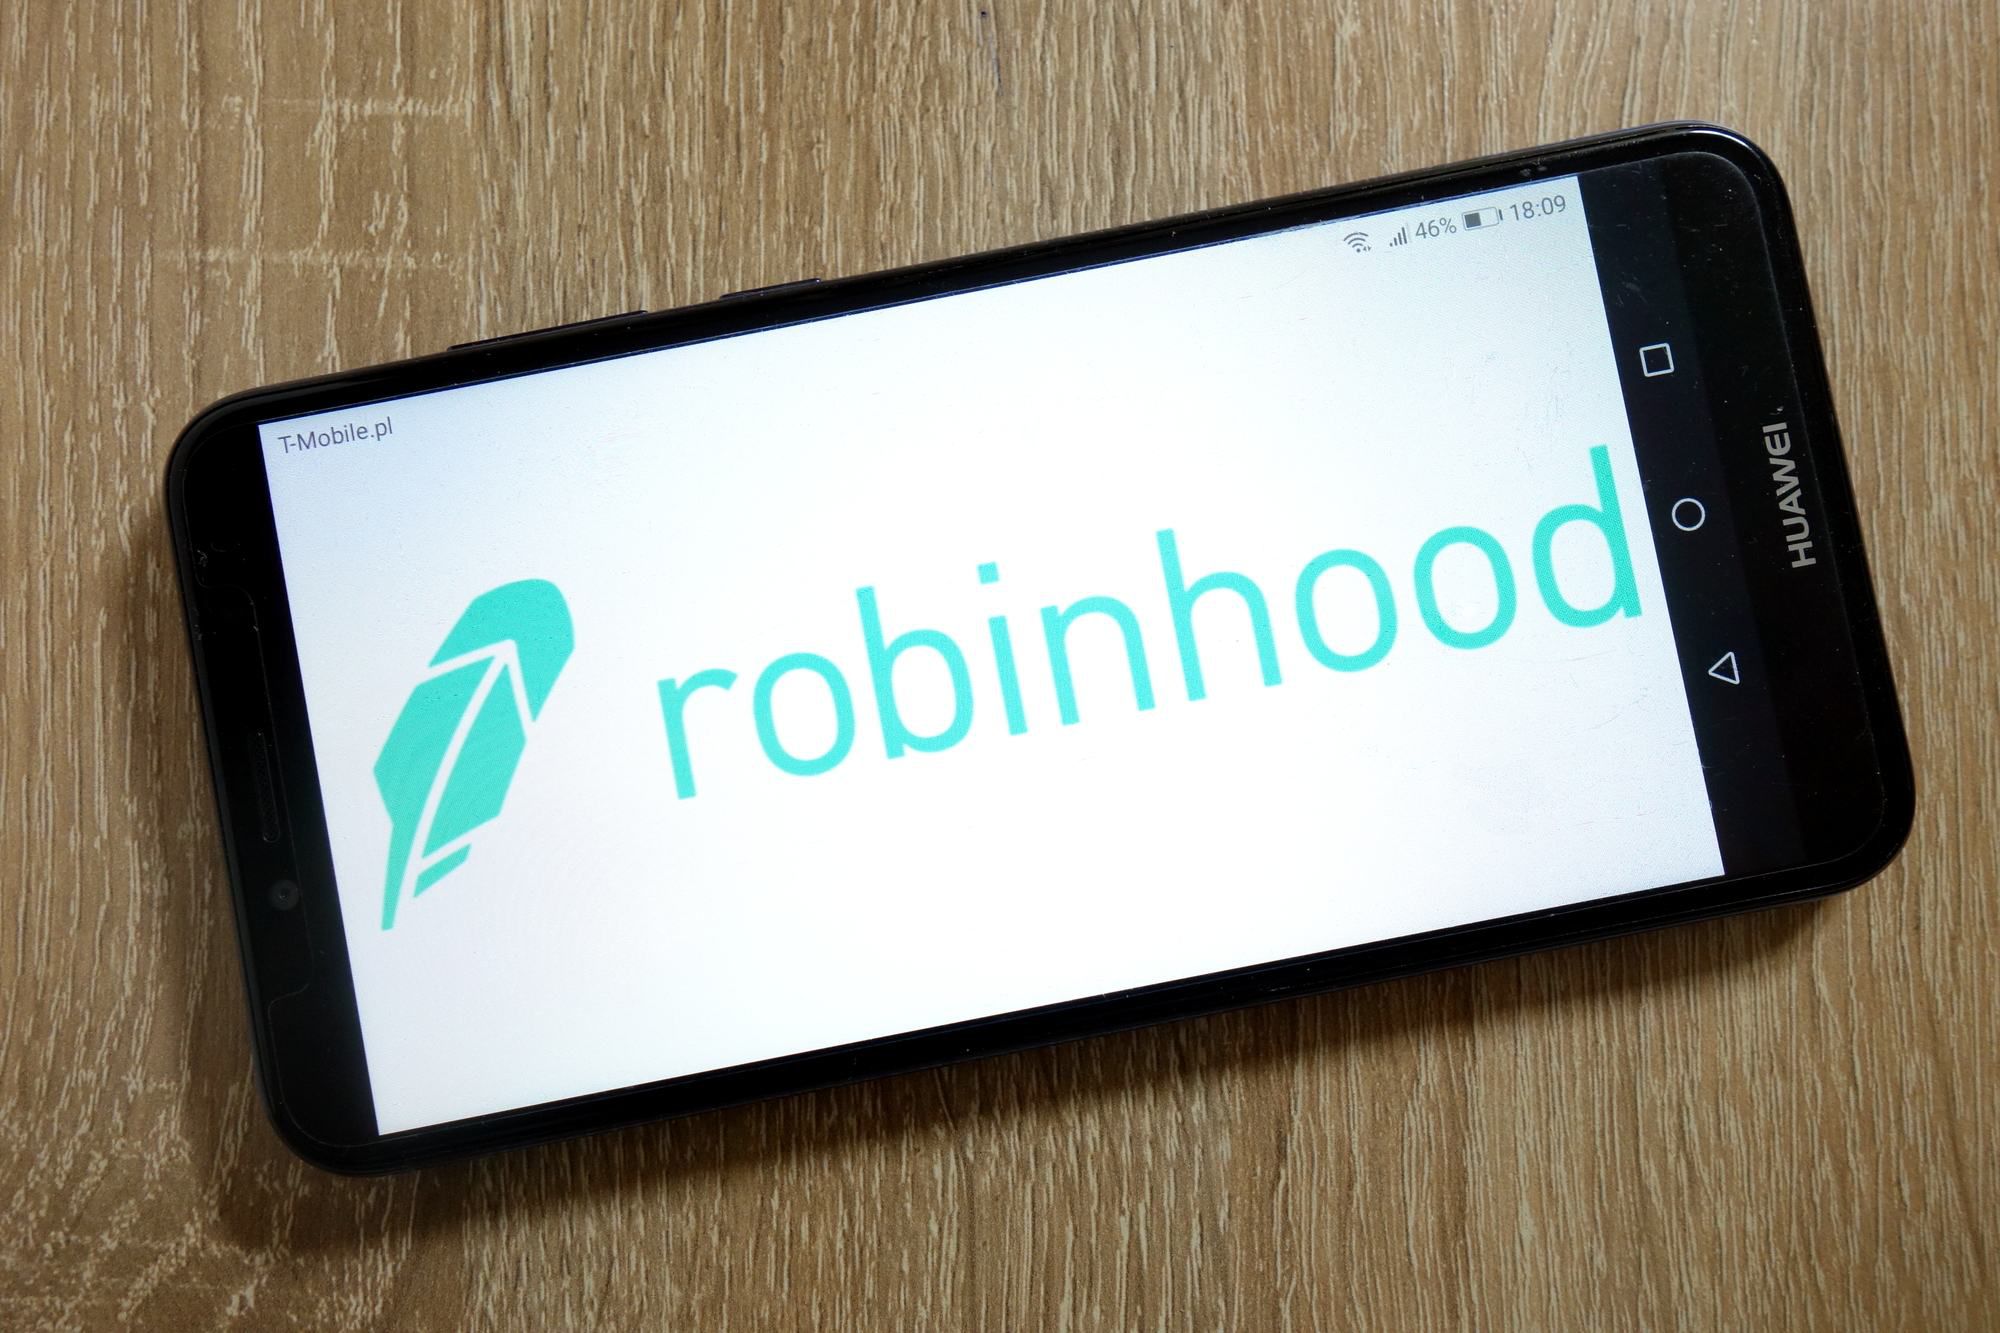 robinhood app.jpg.optimal - طی دو ماه، 6 میلیون کاربر جدید به پلتفرم رابین هود اضافه شده است